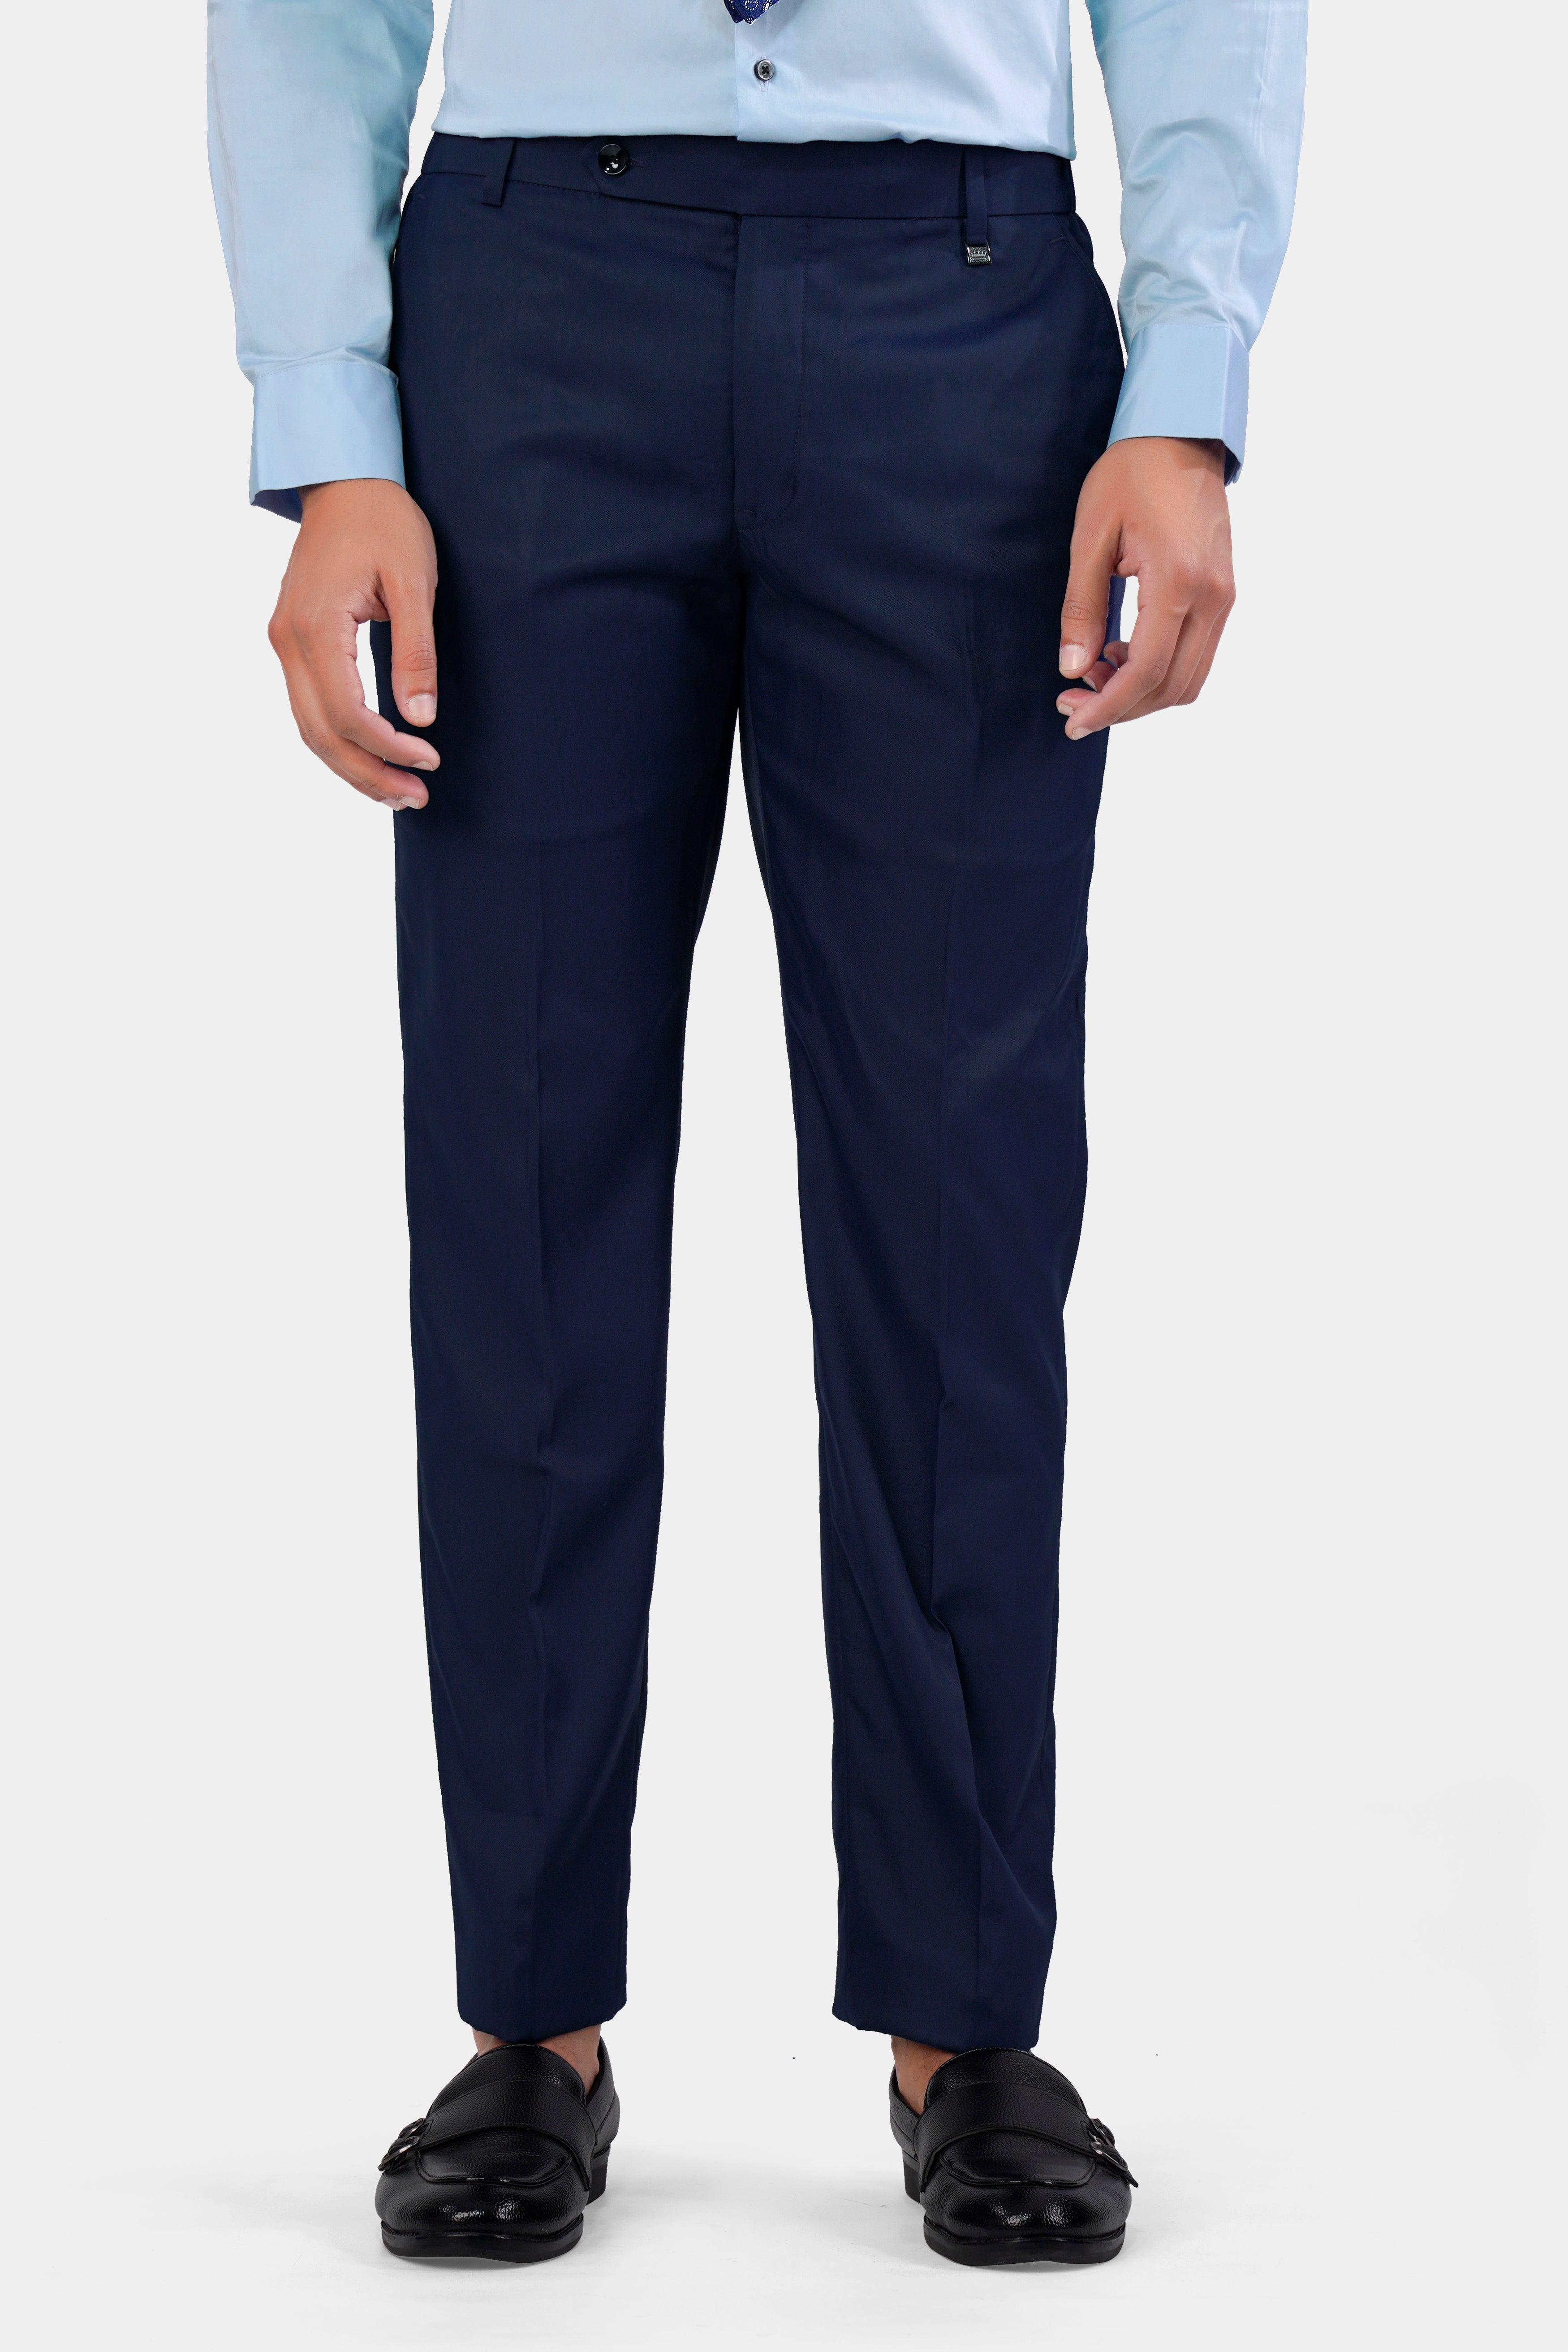 FENDI cadet blue wide leg side zip pants trousers size 40 -US 4 | eBay